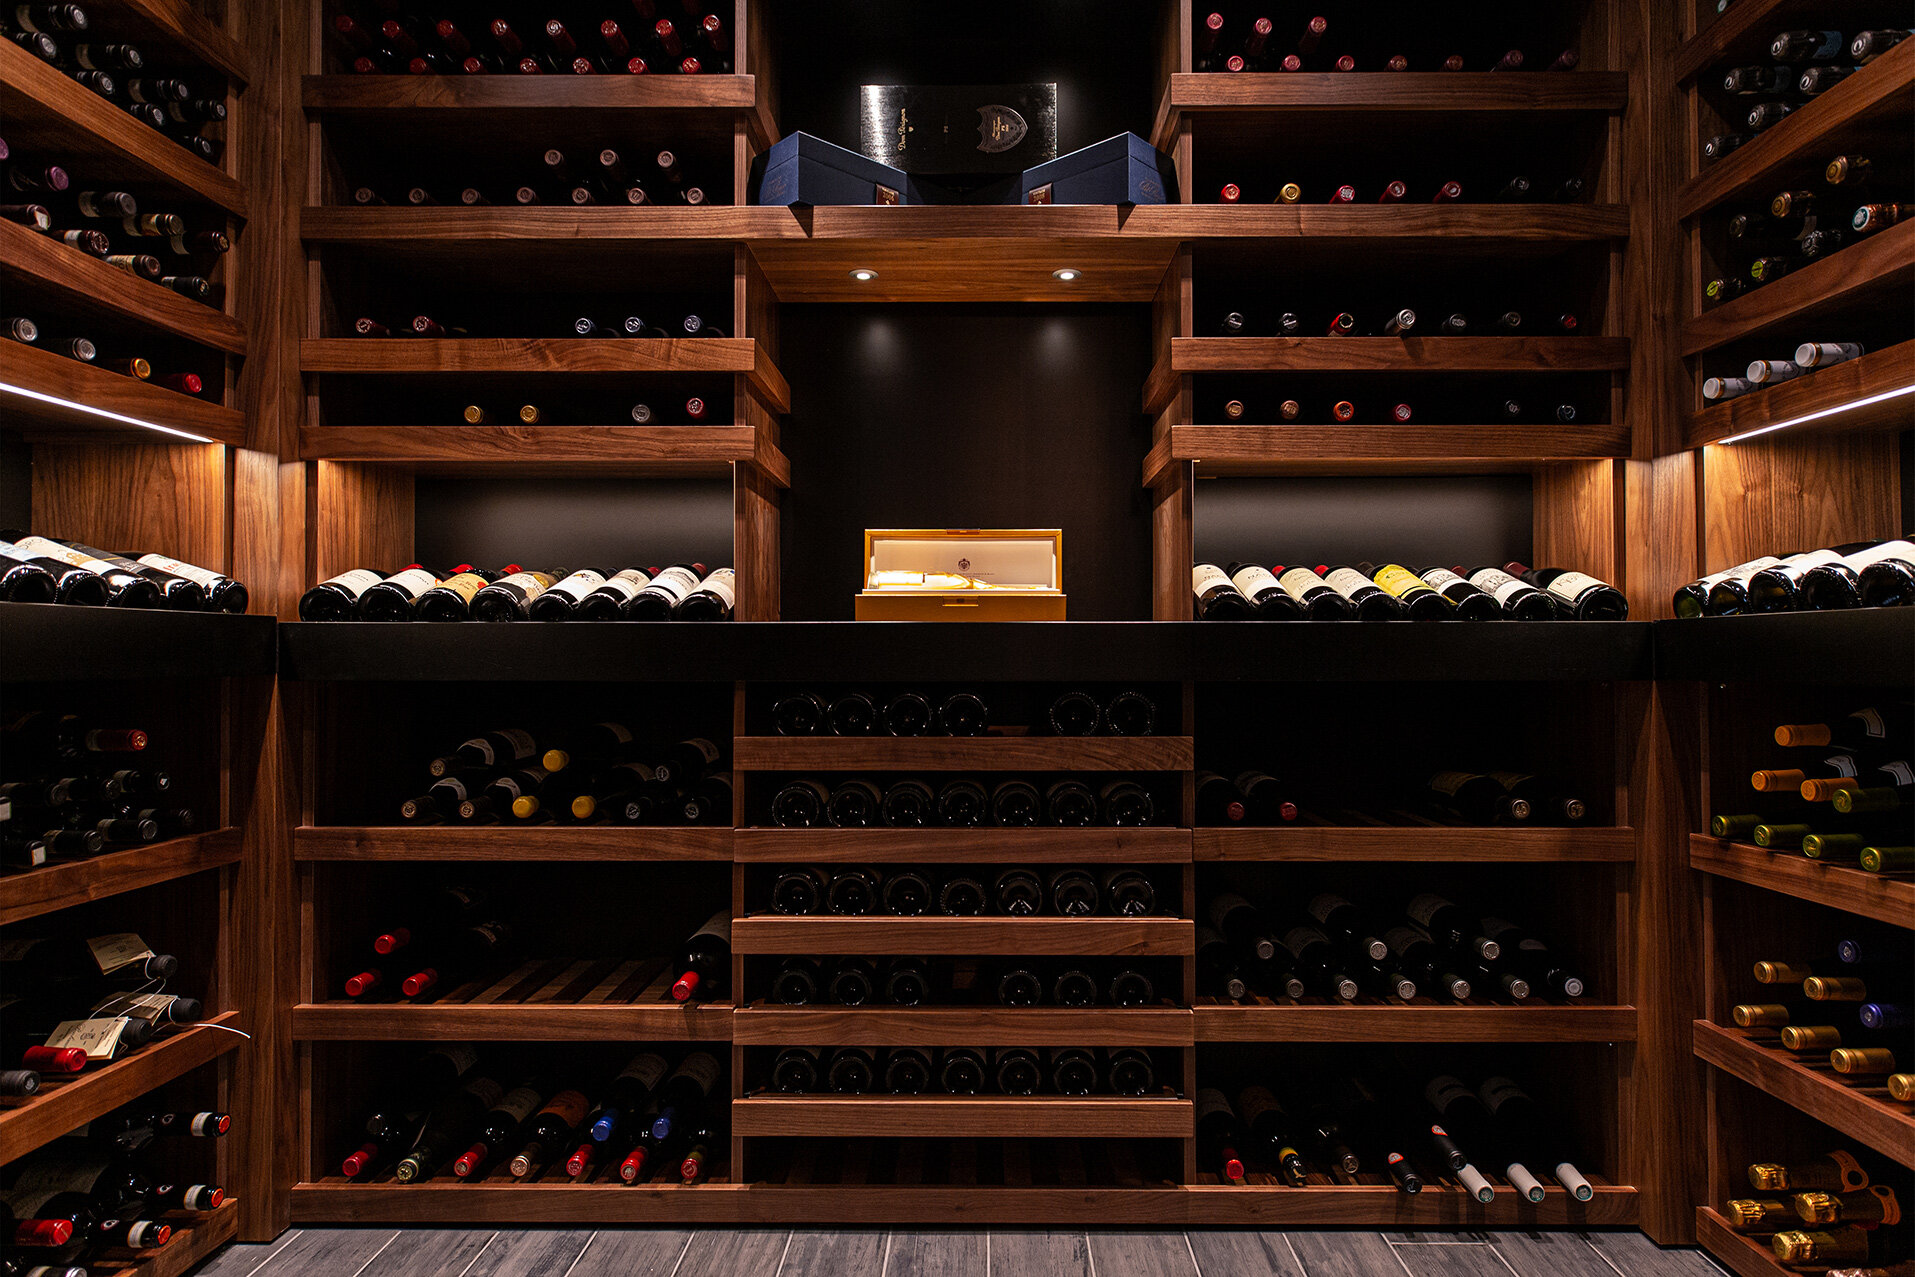 Exquisite Collector's Wine Cellar